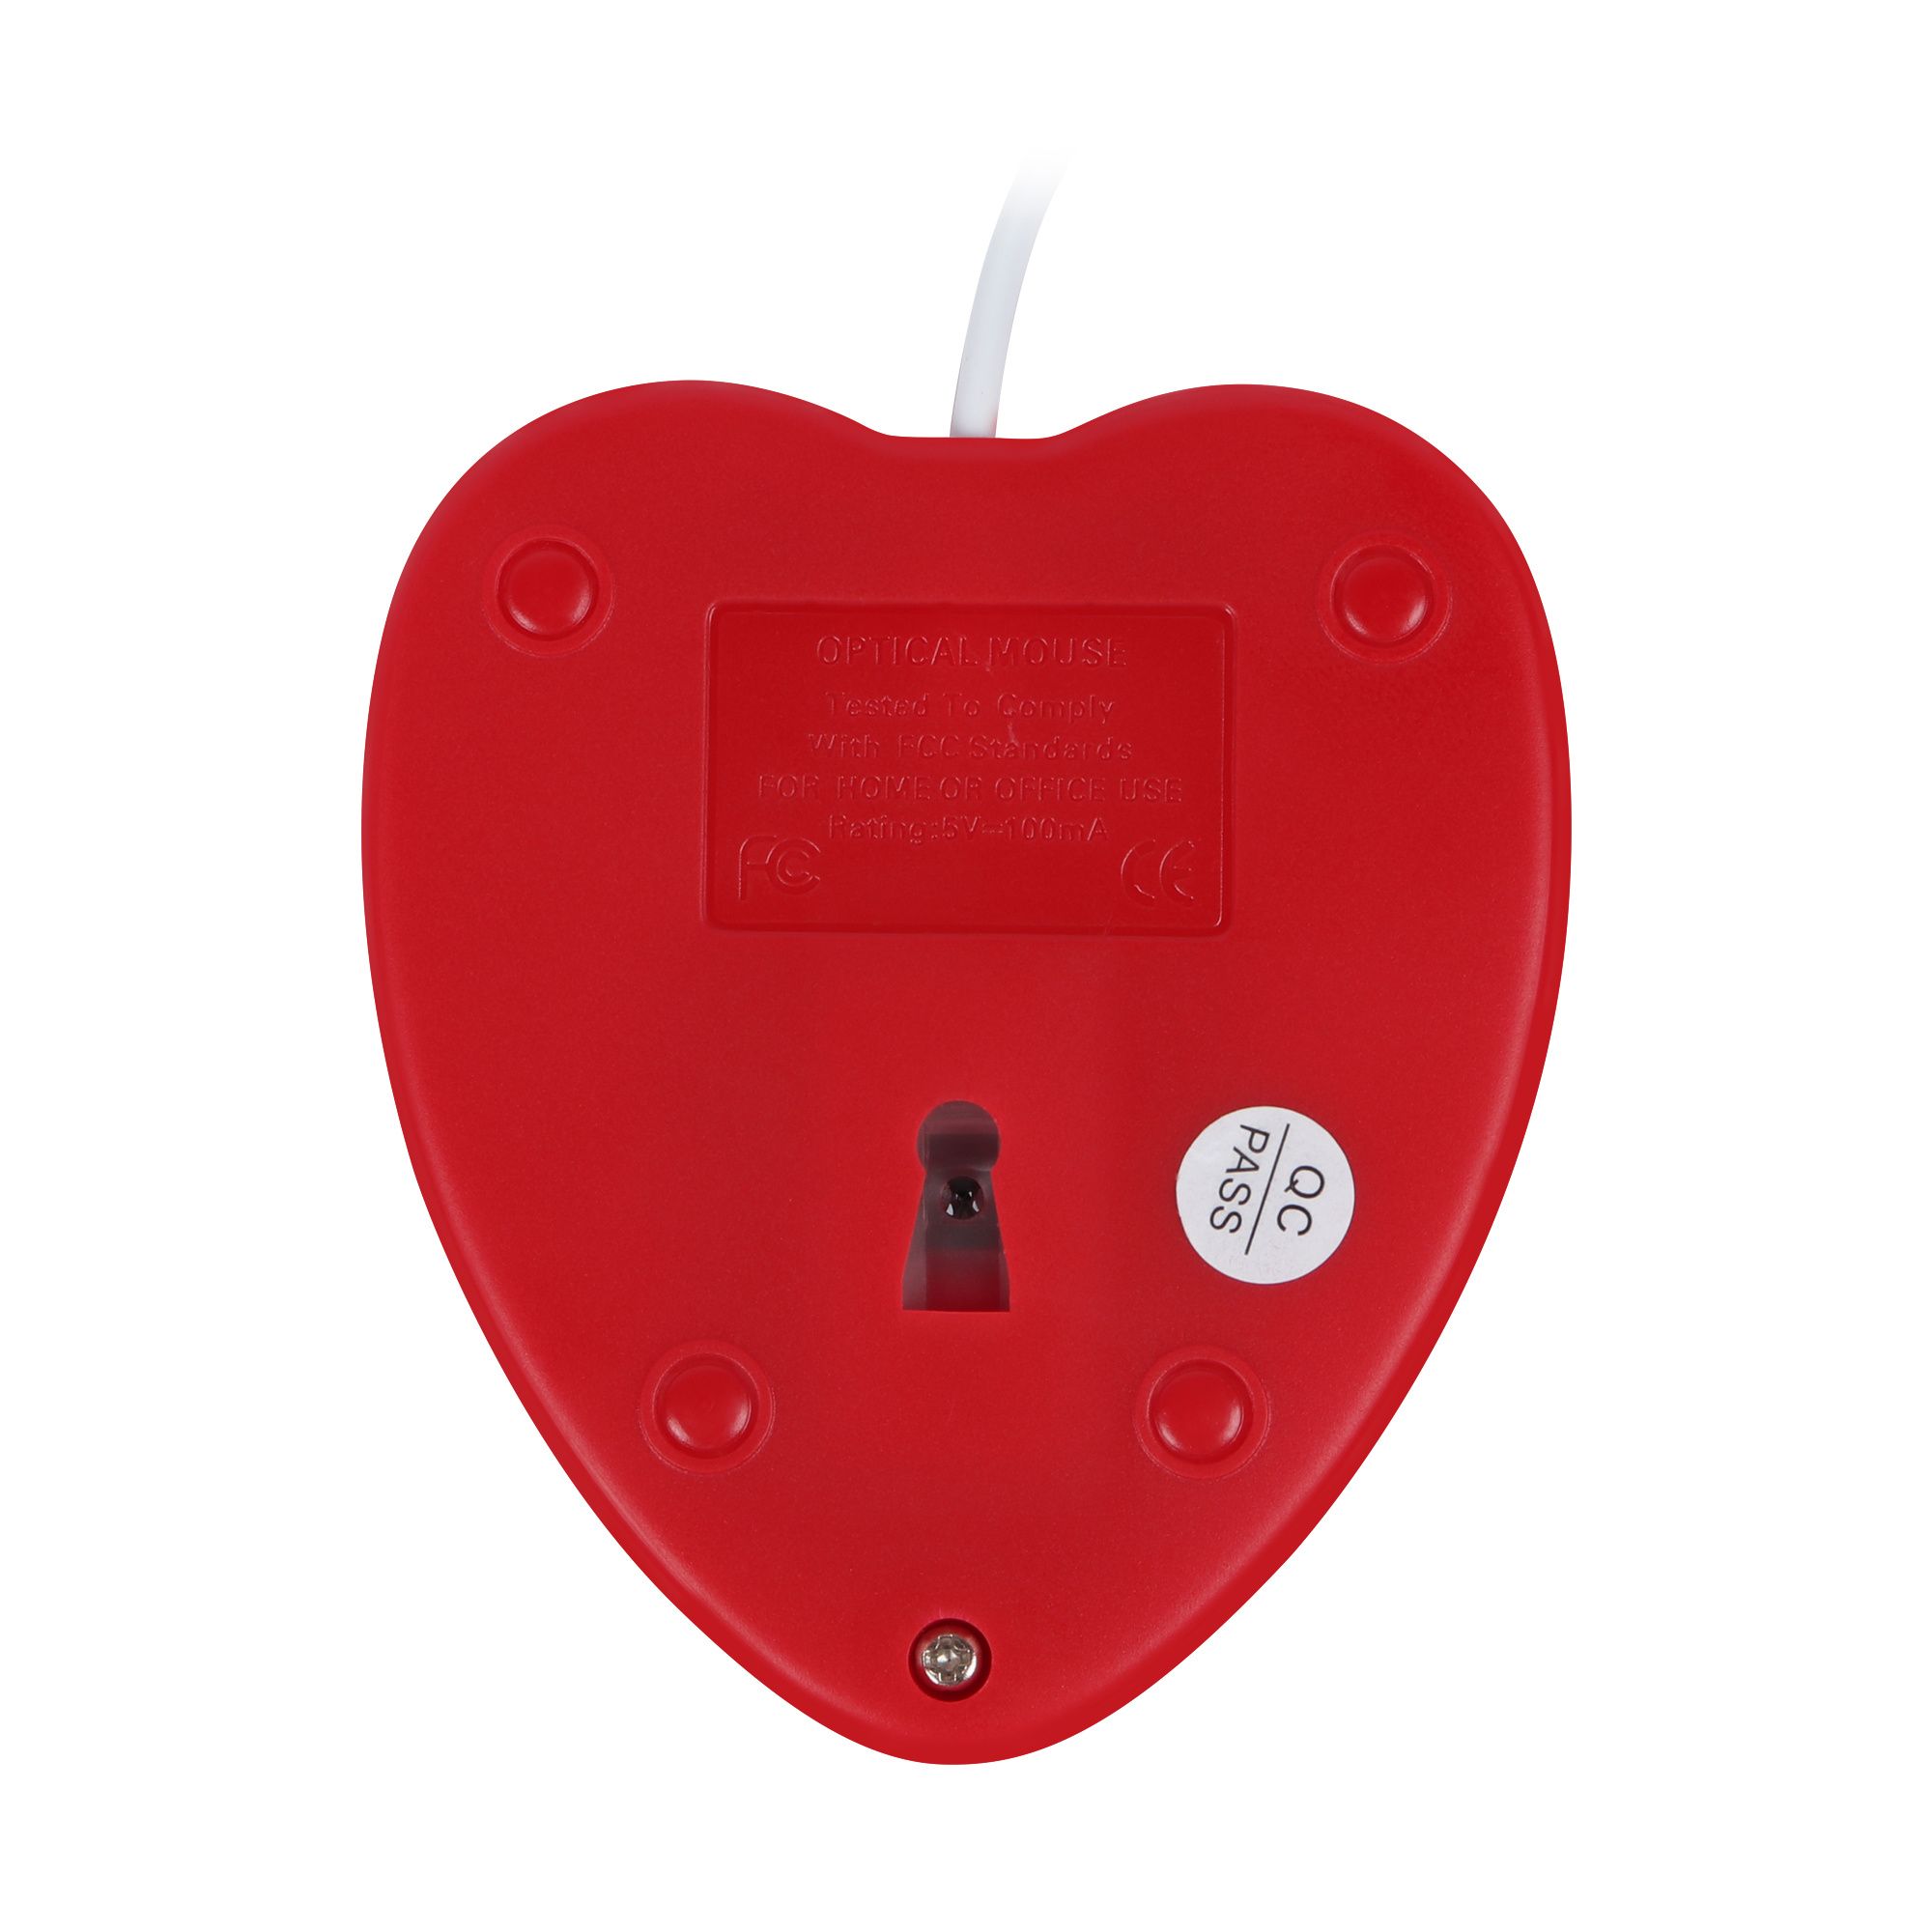 Mouse-cablatu-PC-USB-Otticu-Creativu-Giochi-Cute-Mause-Ergonomicu-Love-Heart-3D-Muse-Per-Laptop (5)